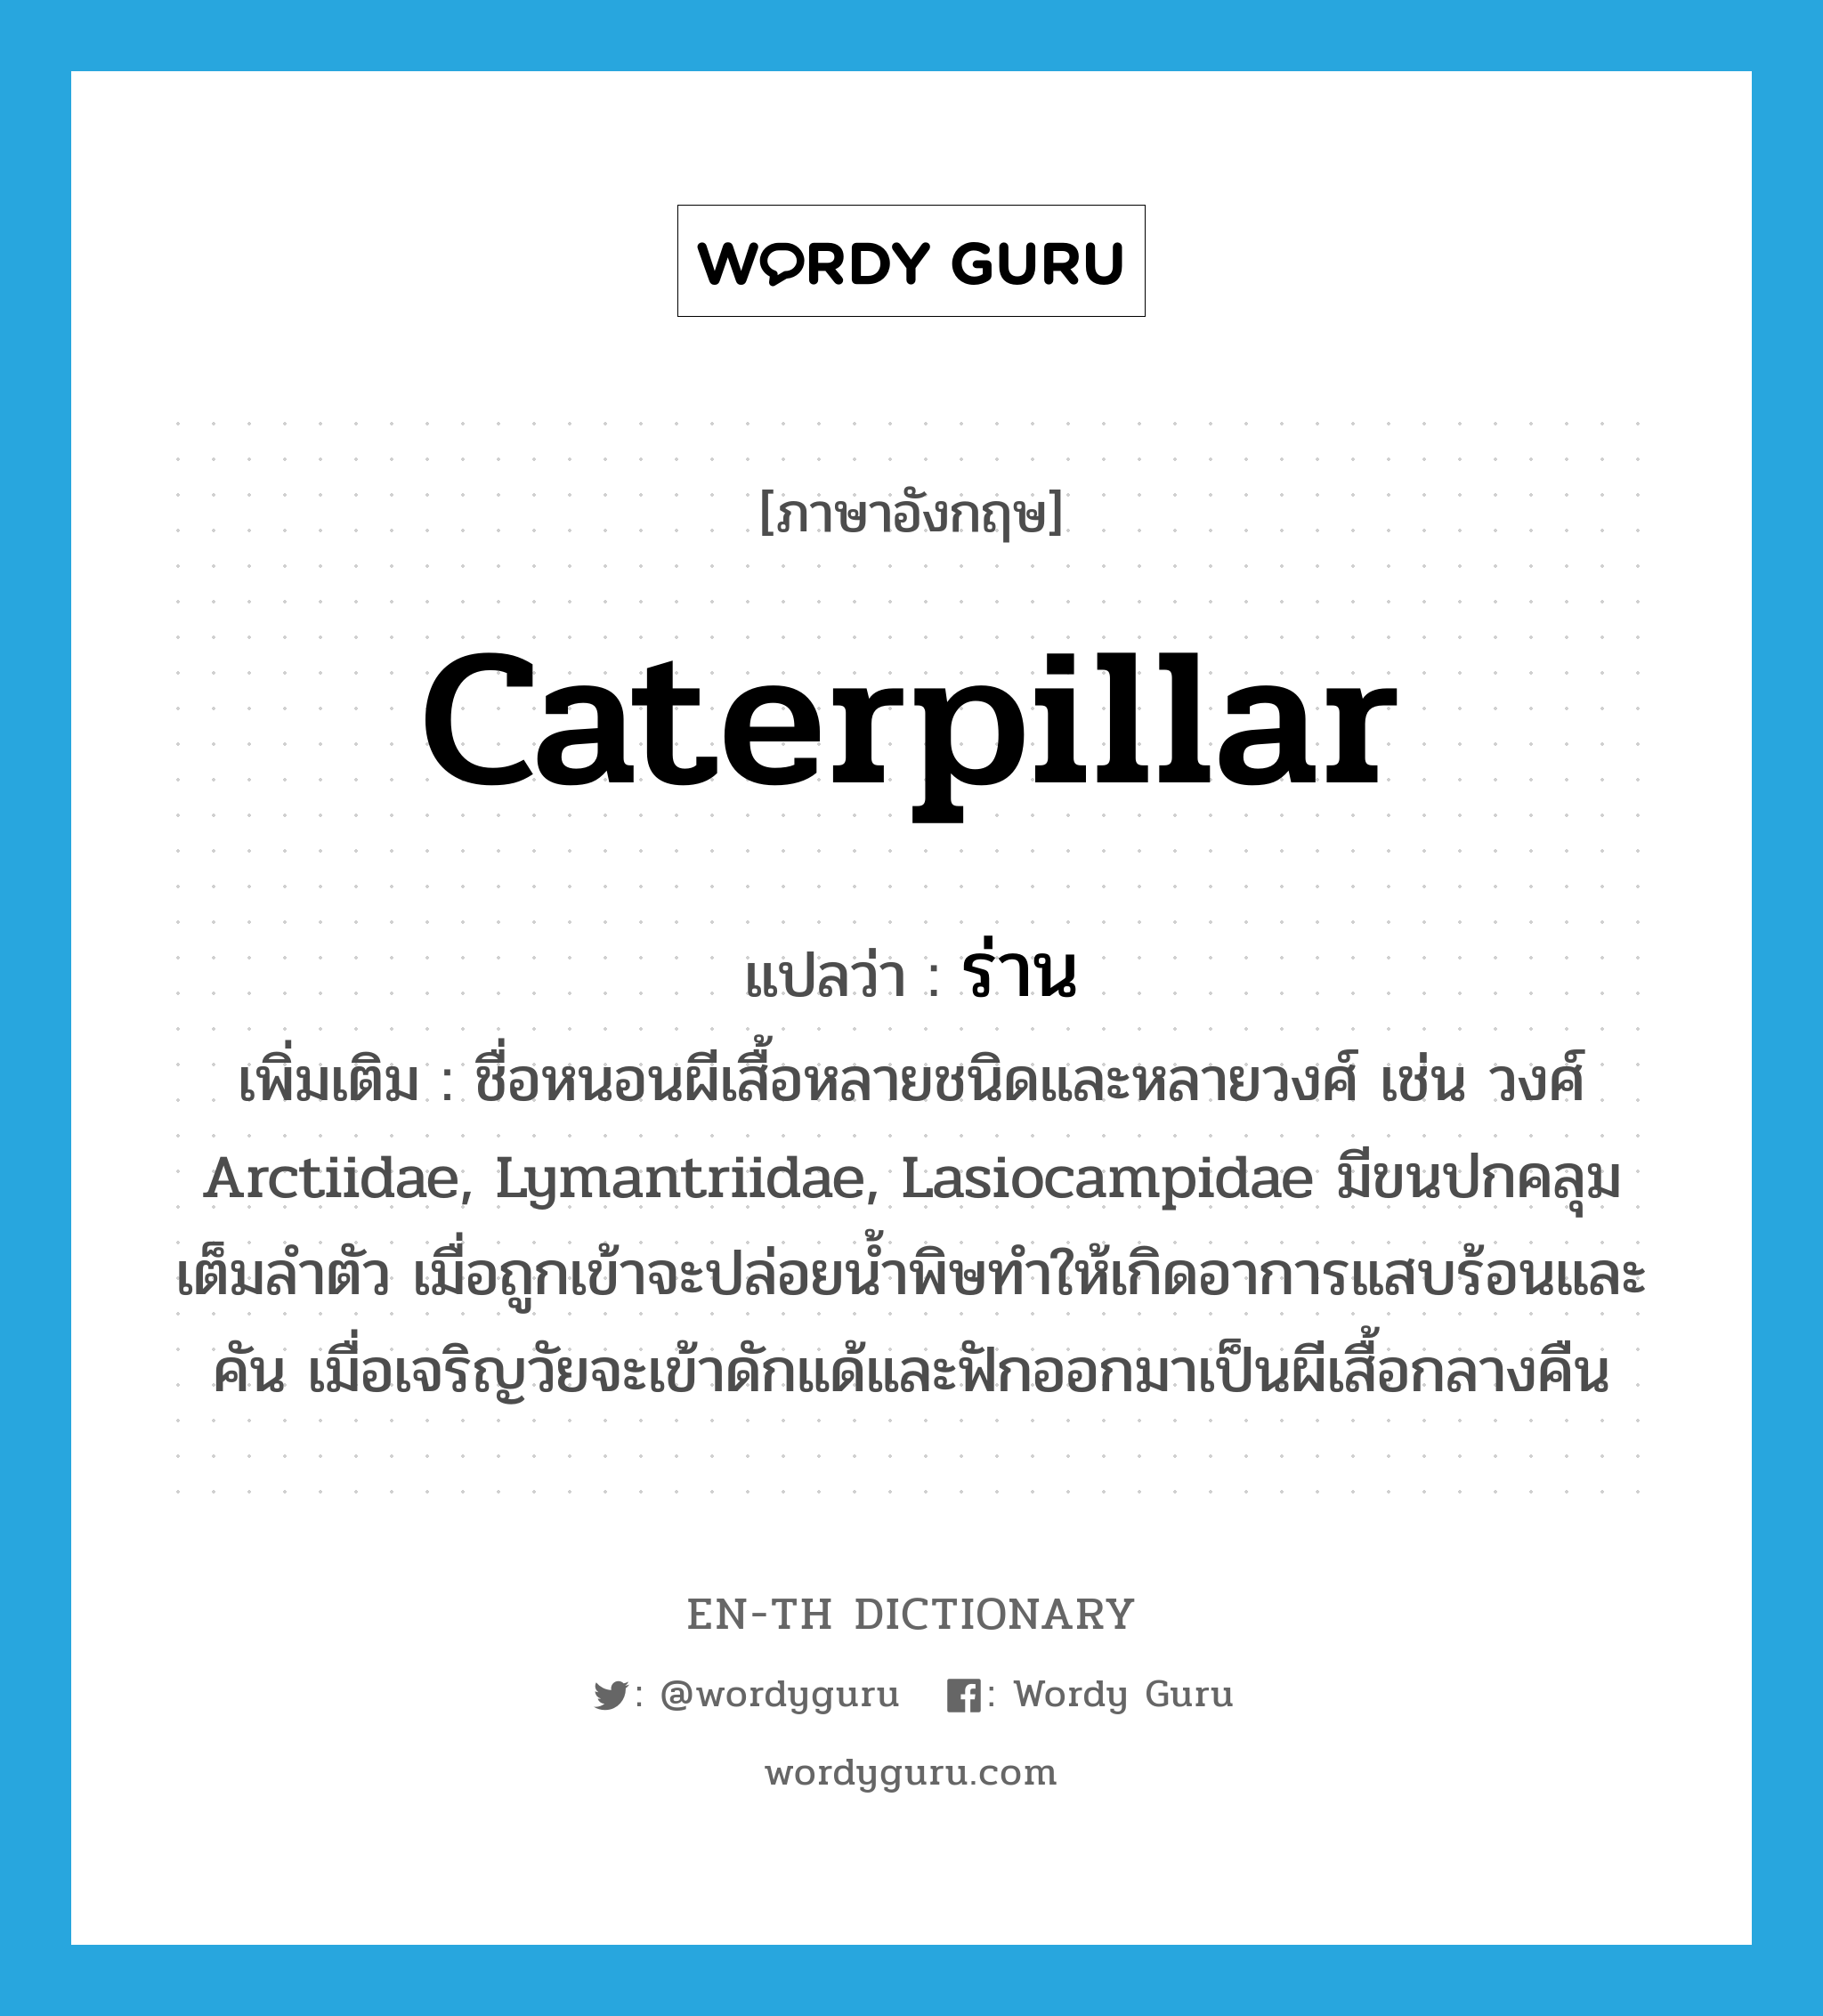 caterpillar แปลว่า?, คำศัพท์ภาษาอังกฤษ caterpillar แปลว่า ร่าน ประเภท N เพิ่มเติม ชื่อหนอนผีเสื้อหลายชนิดและหลายวงศ์ เช่น วงศ์ Arctiidae, Lymantriidae, Lasiocampidae มีขนปกคลุมเต็มลำตัว เมื่อถูกเข้าจะปล่อยน้ำพิษทำให้เกิดอาการแสบร้อนและคัน เมื่อเจริญวัยจะเข้าดักแด้และฟักออกมาเป็นผีเสื้อกลางคืน หมวด N